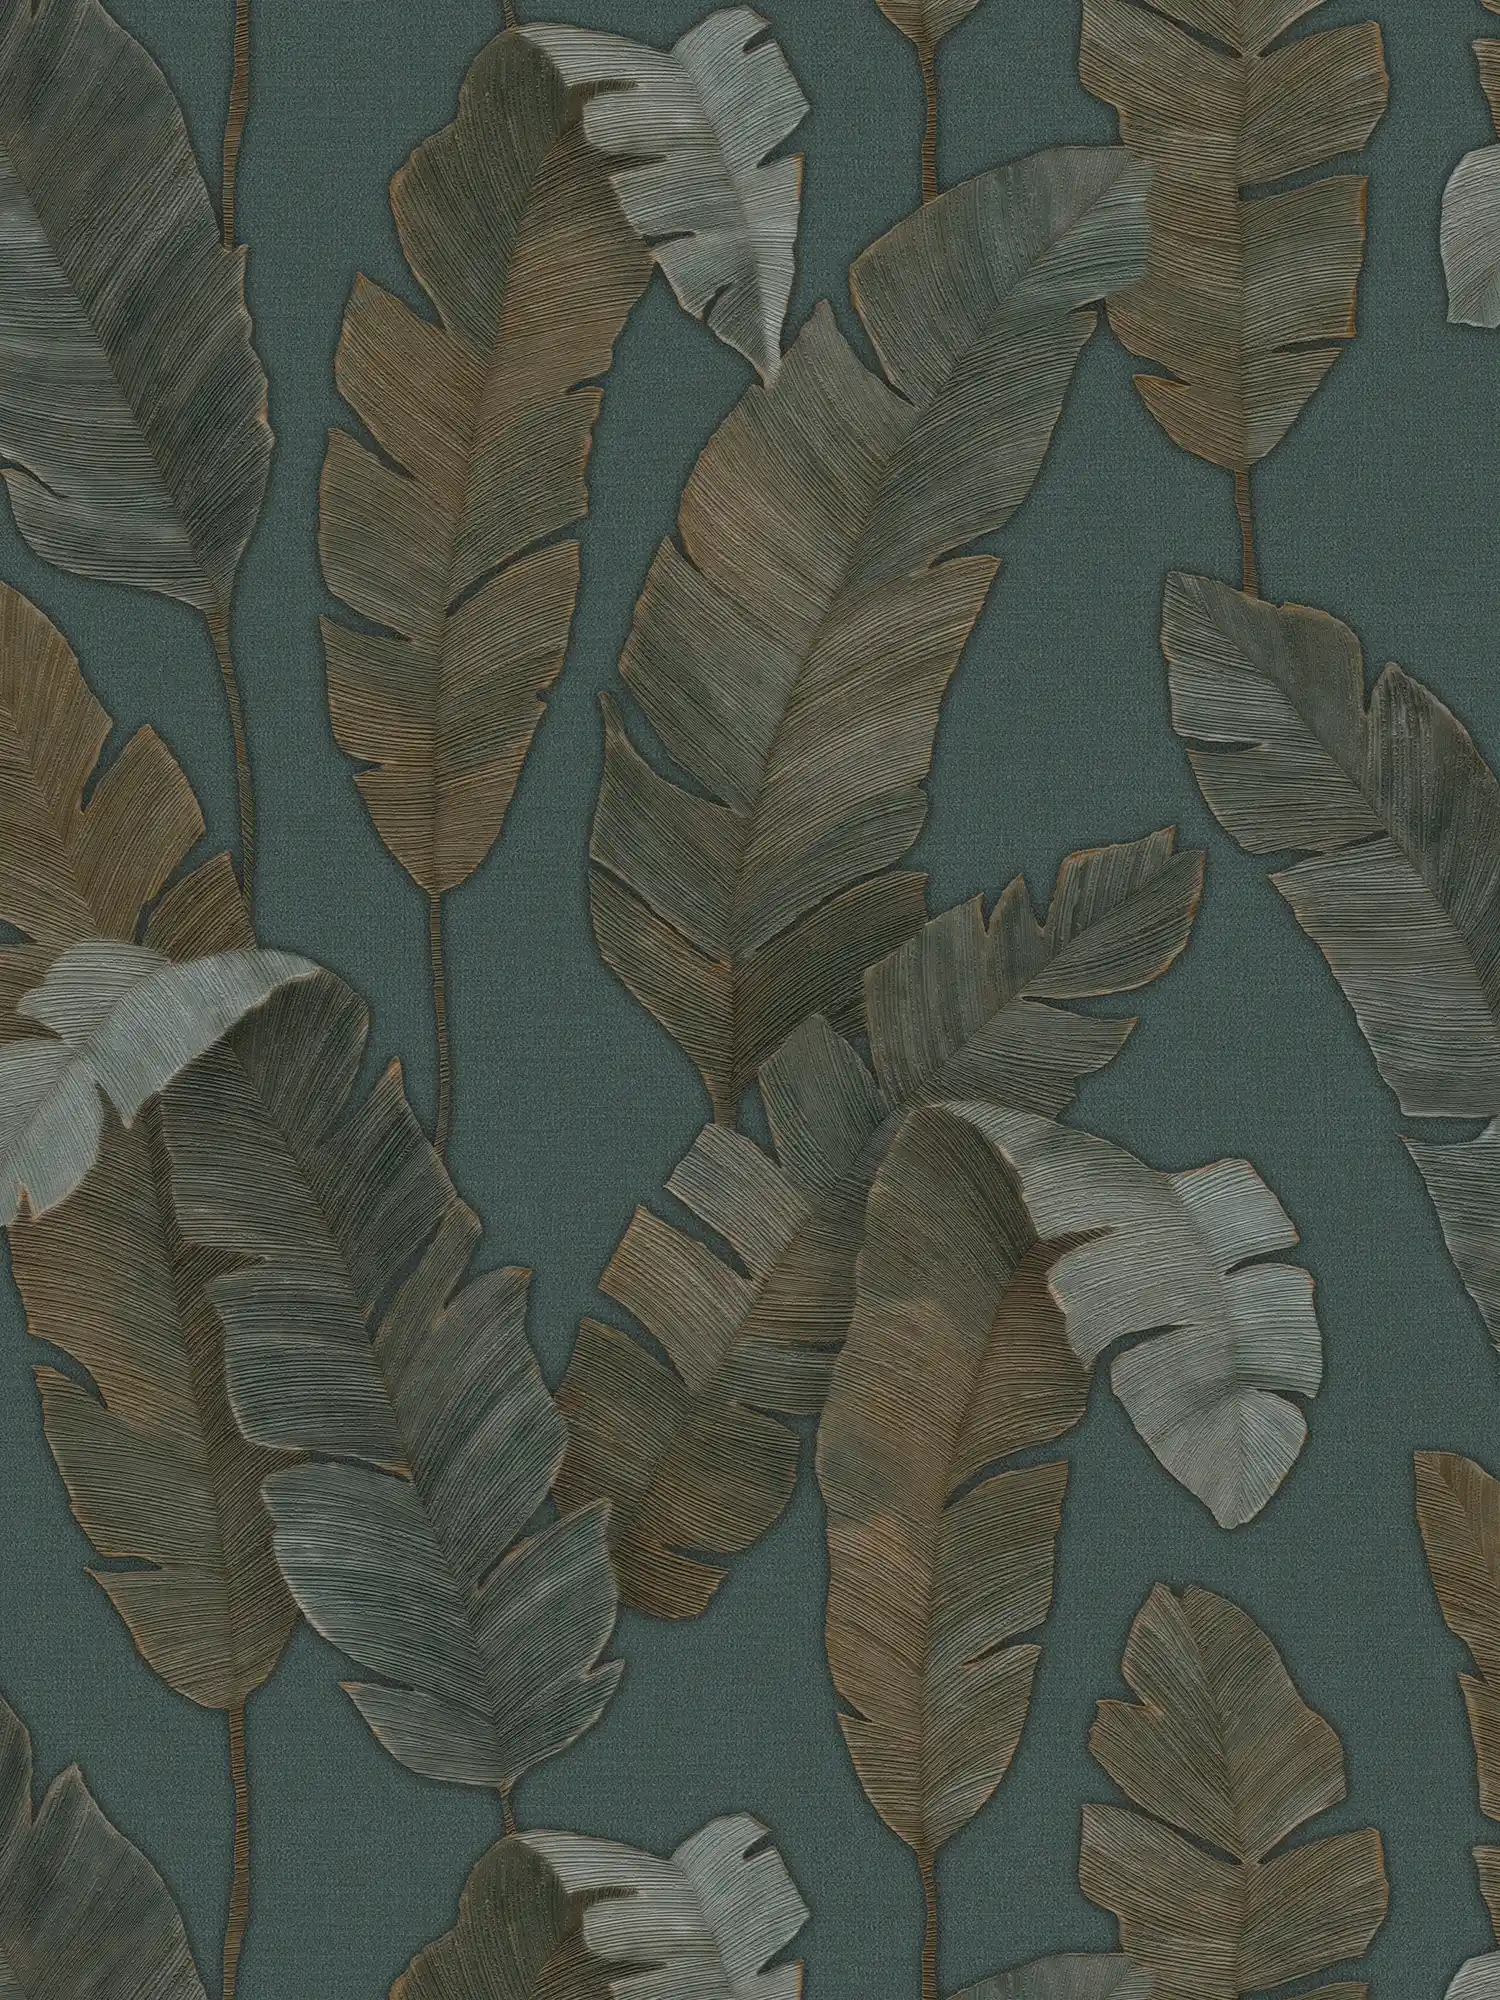 Vliesbehang met grote palmbladeren in donkere kleur - petrol, groen, bruin
